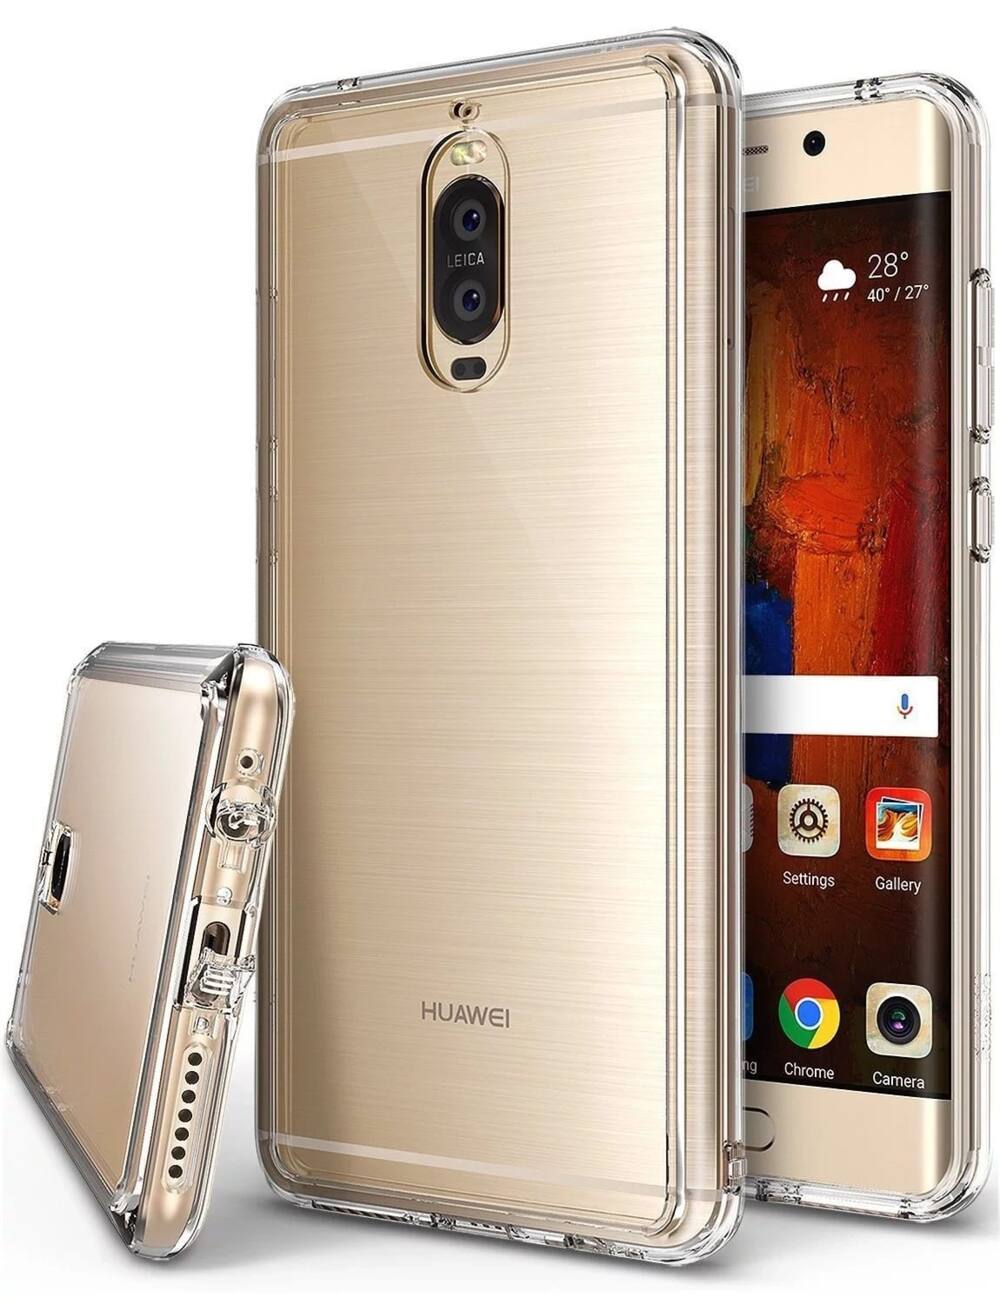 Huawei Mate 9 price in kenya specs & review